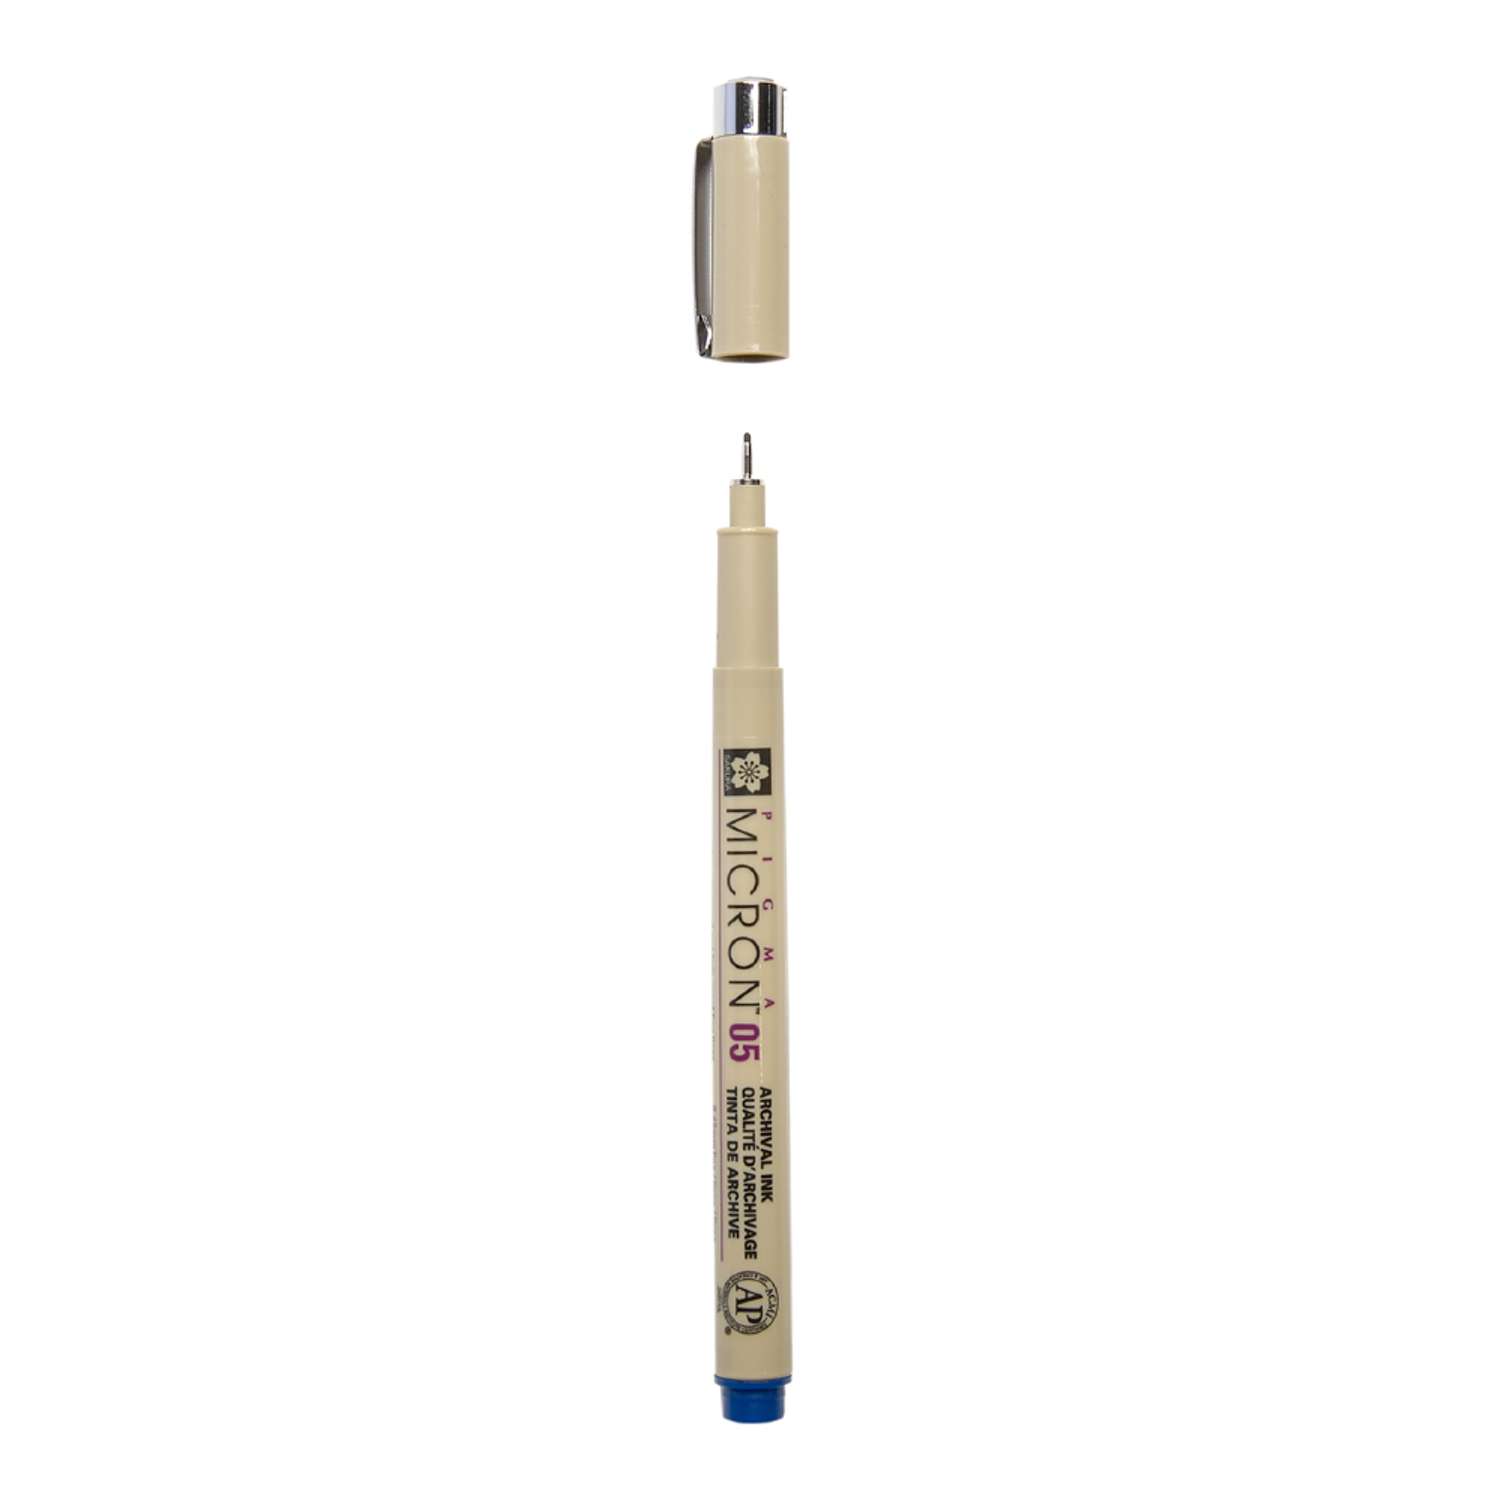 Ручка капиллярная Sakura Pigma Micron 05 цвет чернил: королевский синий - фото 2